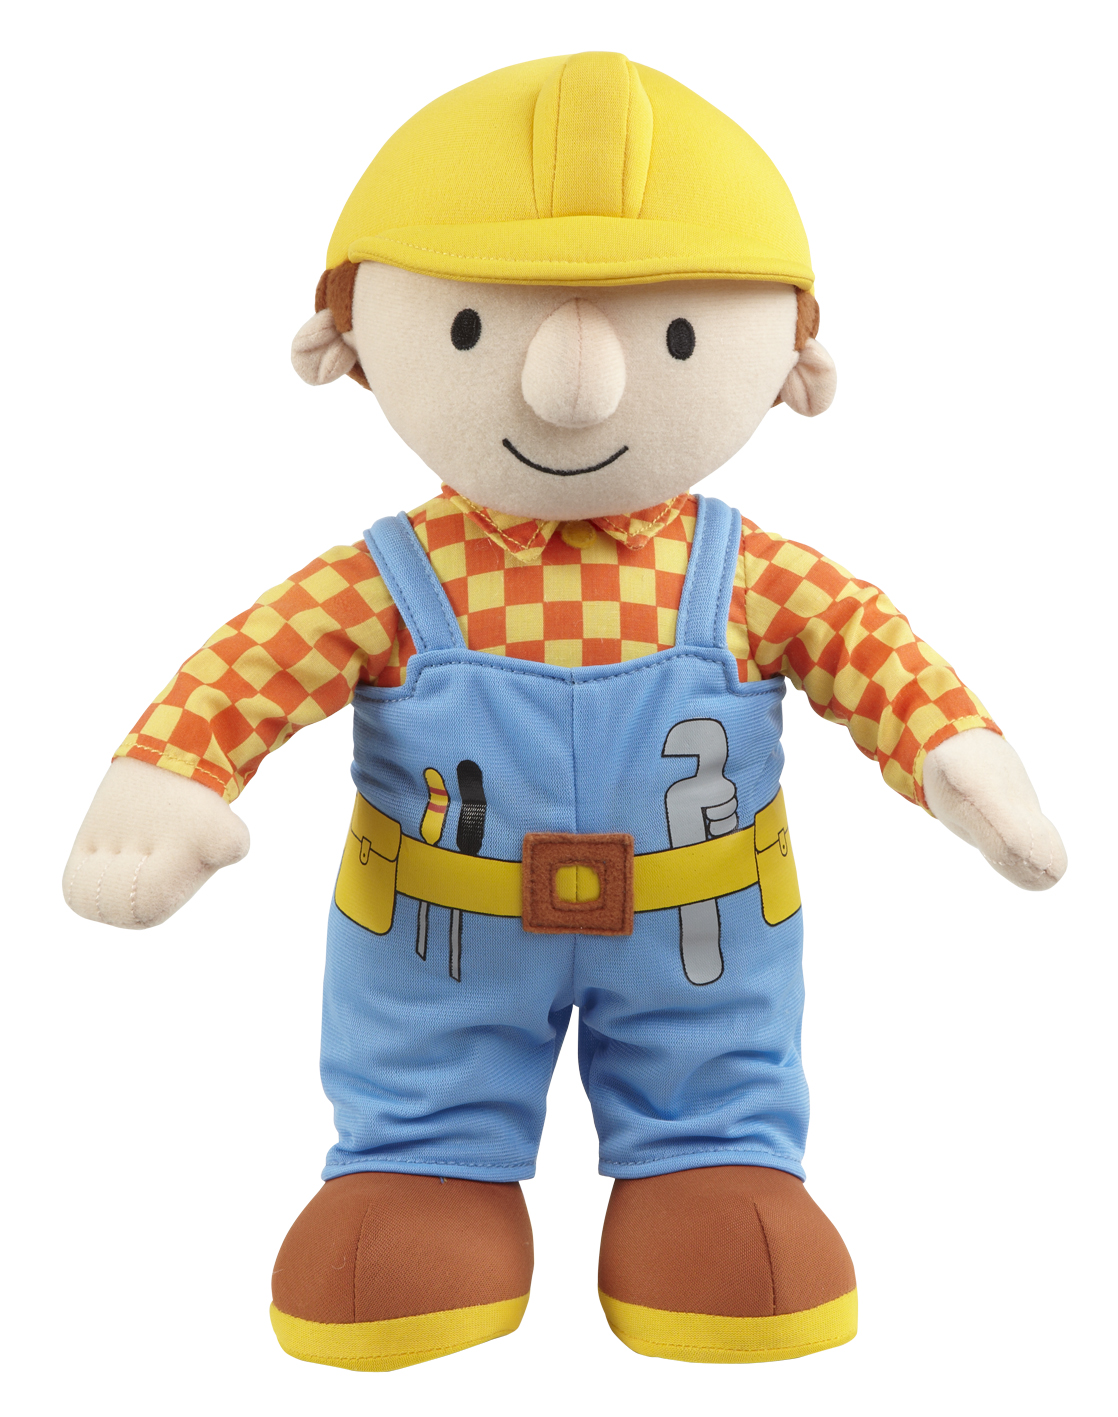 Bob the Builder - 12` Talking Bob